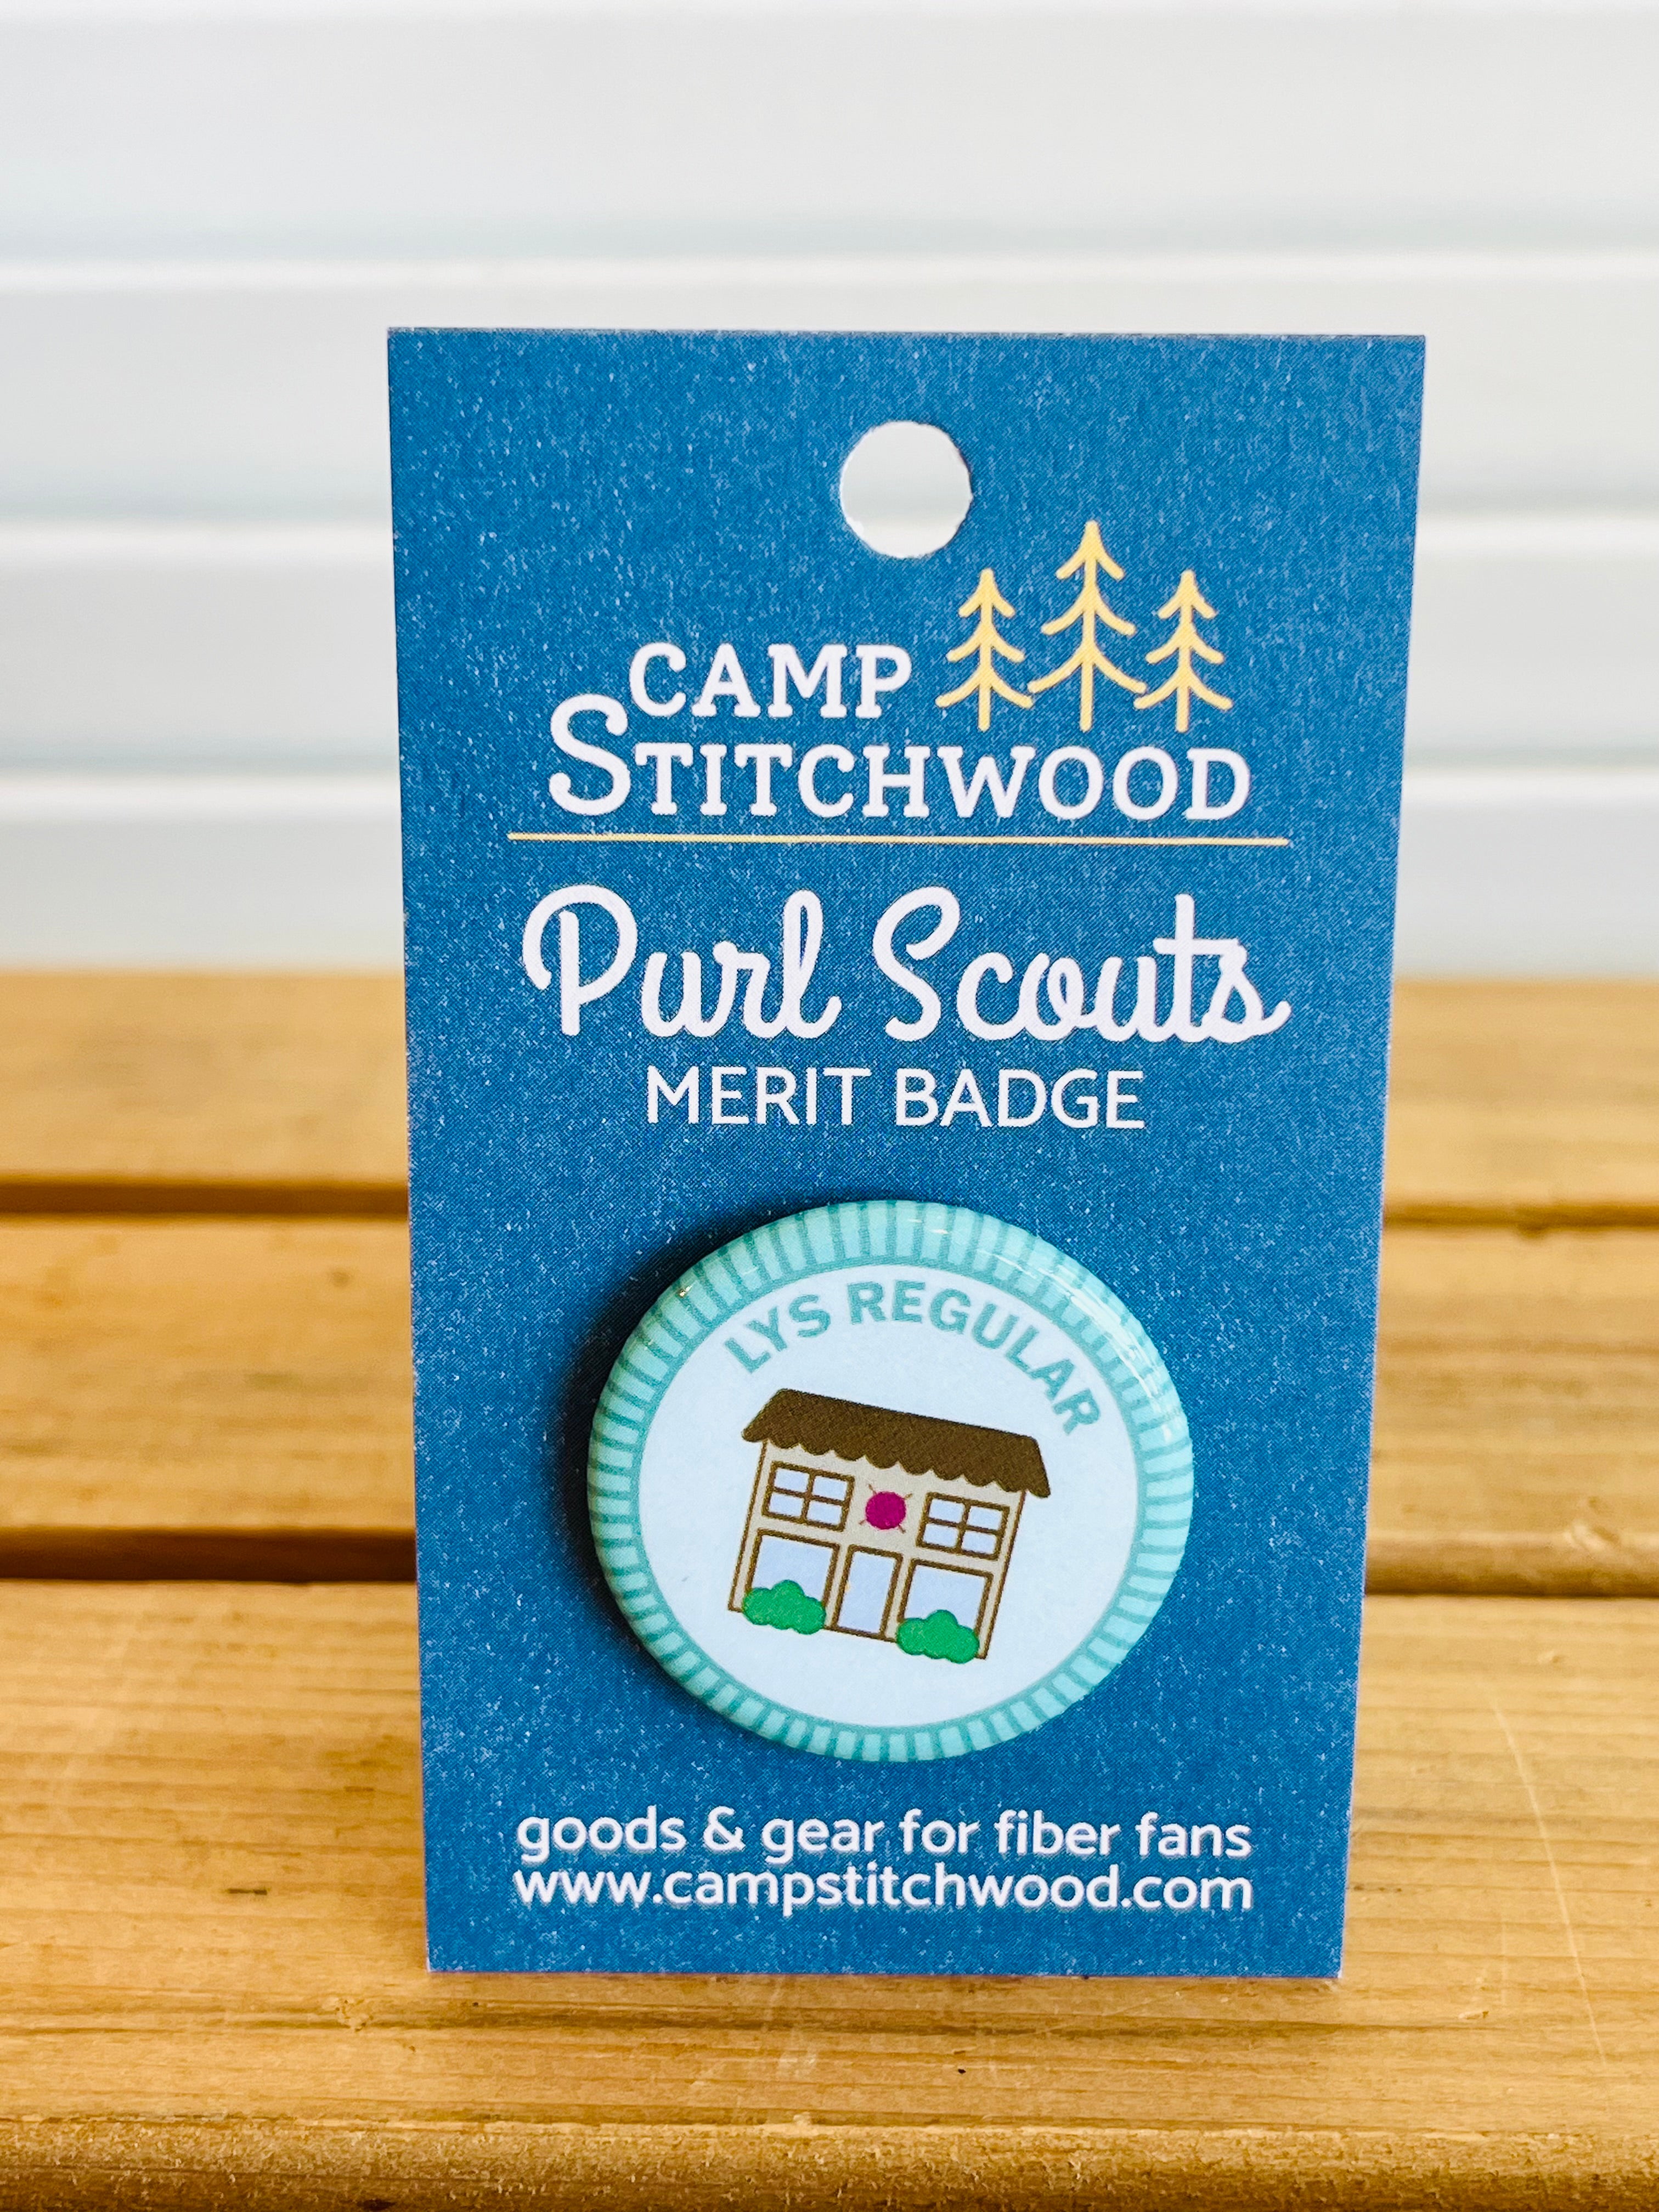 LYS Regular - Purl Scouts Merit Badge